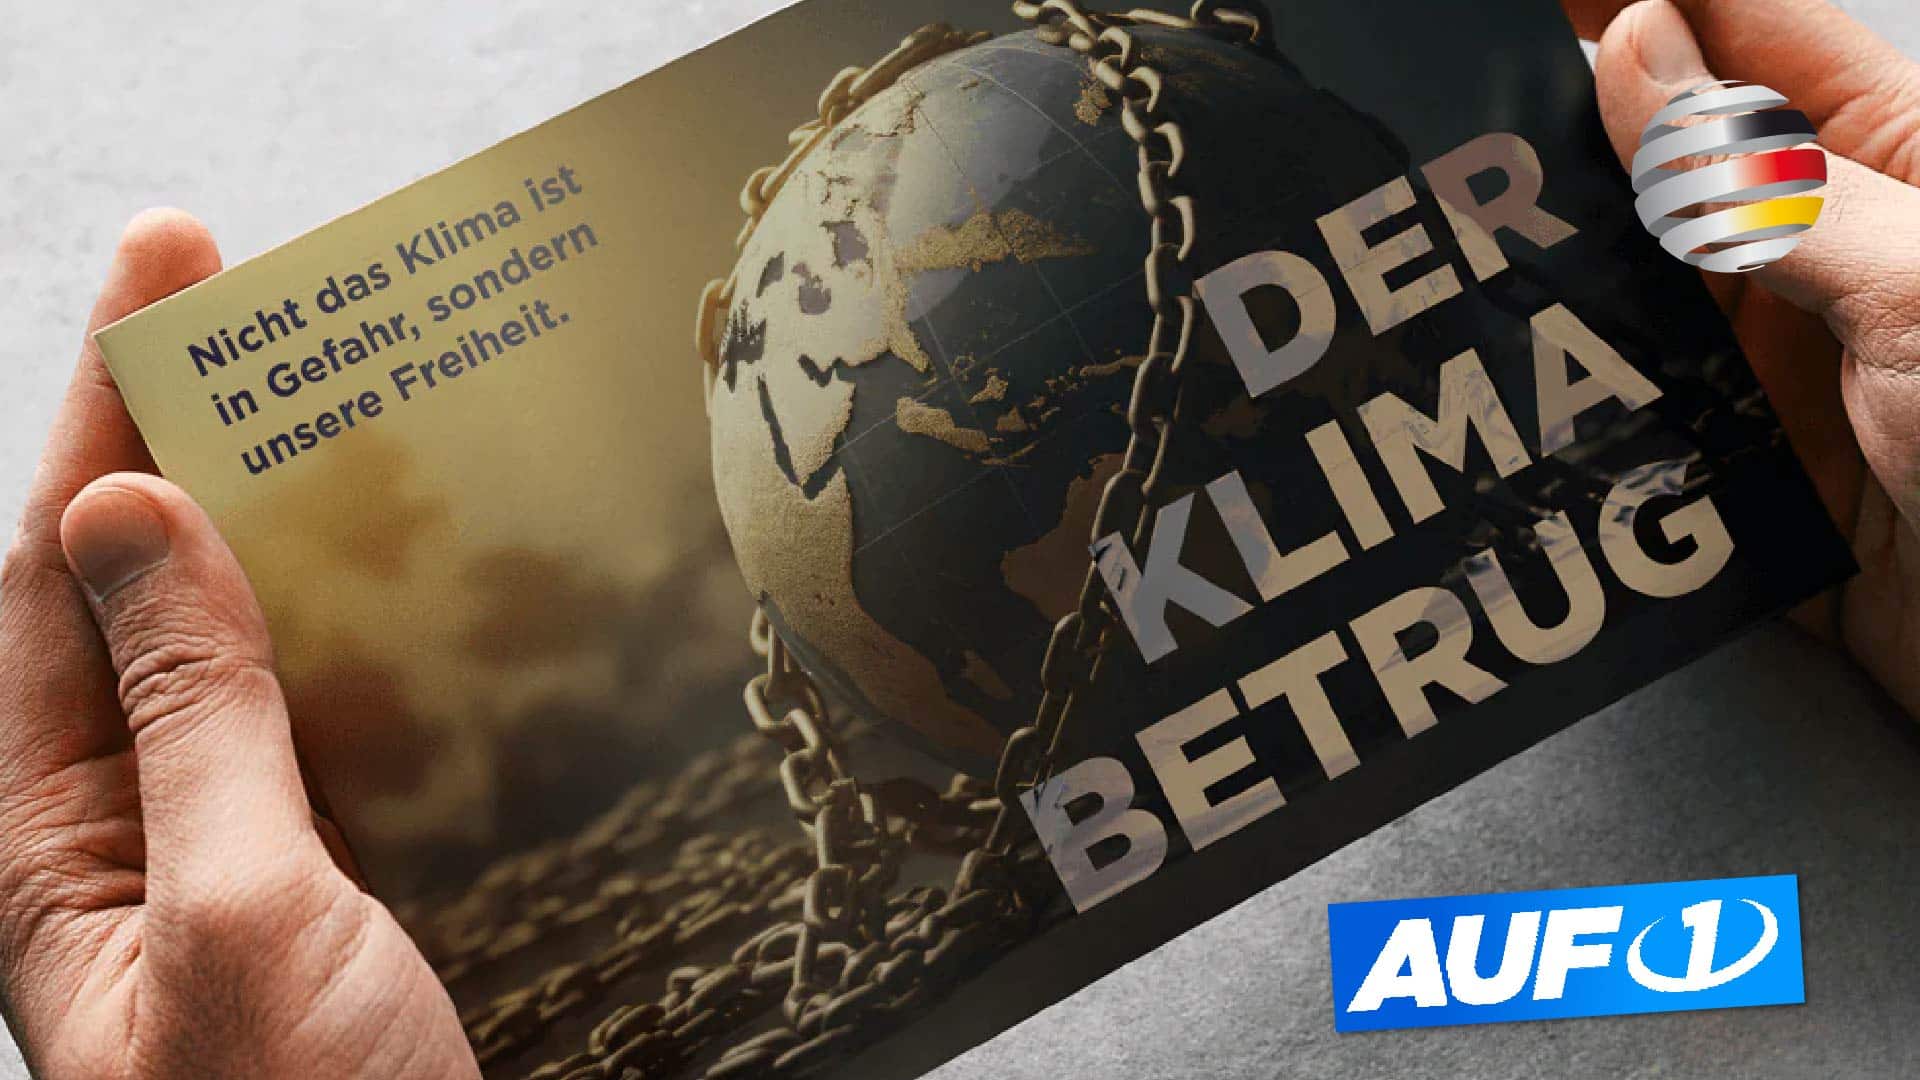 AUF1 legt Anti-Hysterie-Broschüre auf:  Nicht das Klima ist in Gefahr, sondern unsere Freiheit!